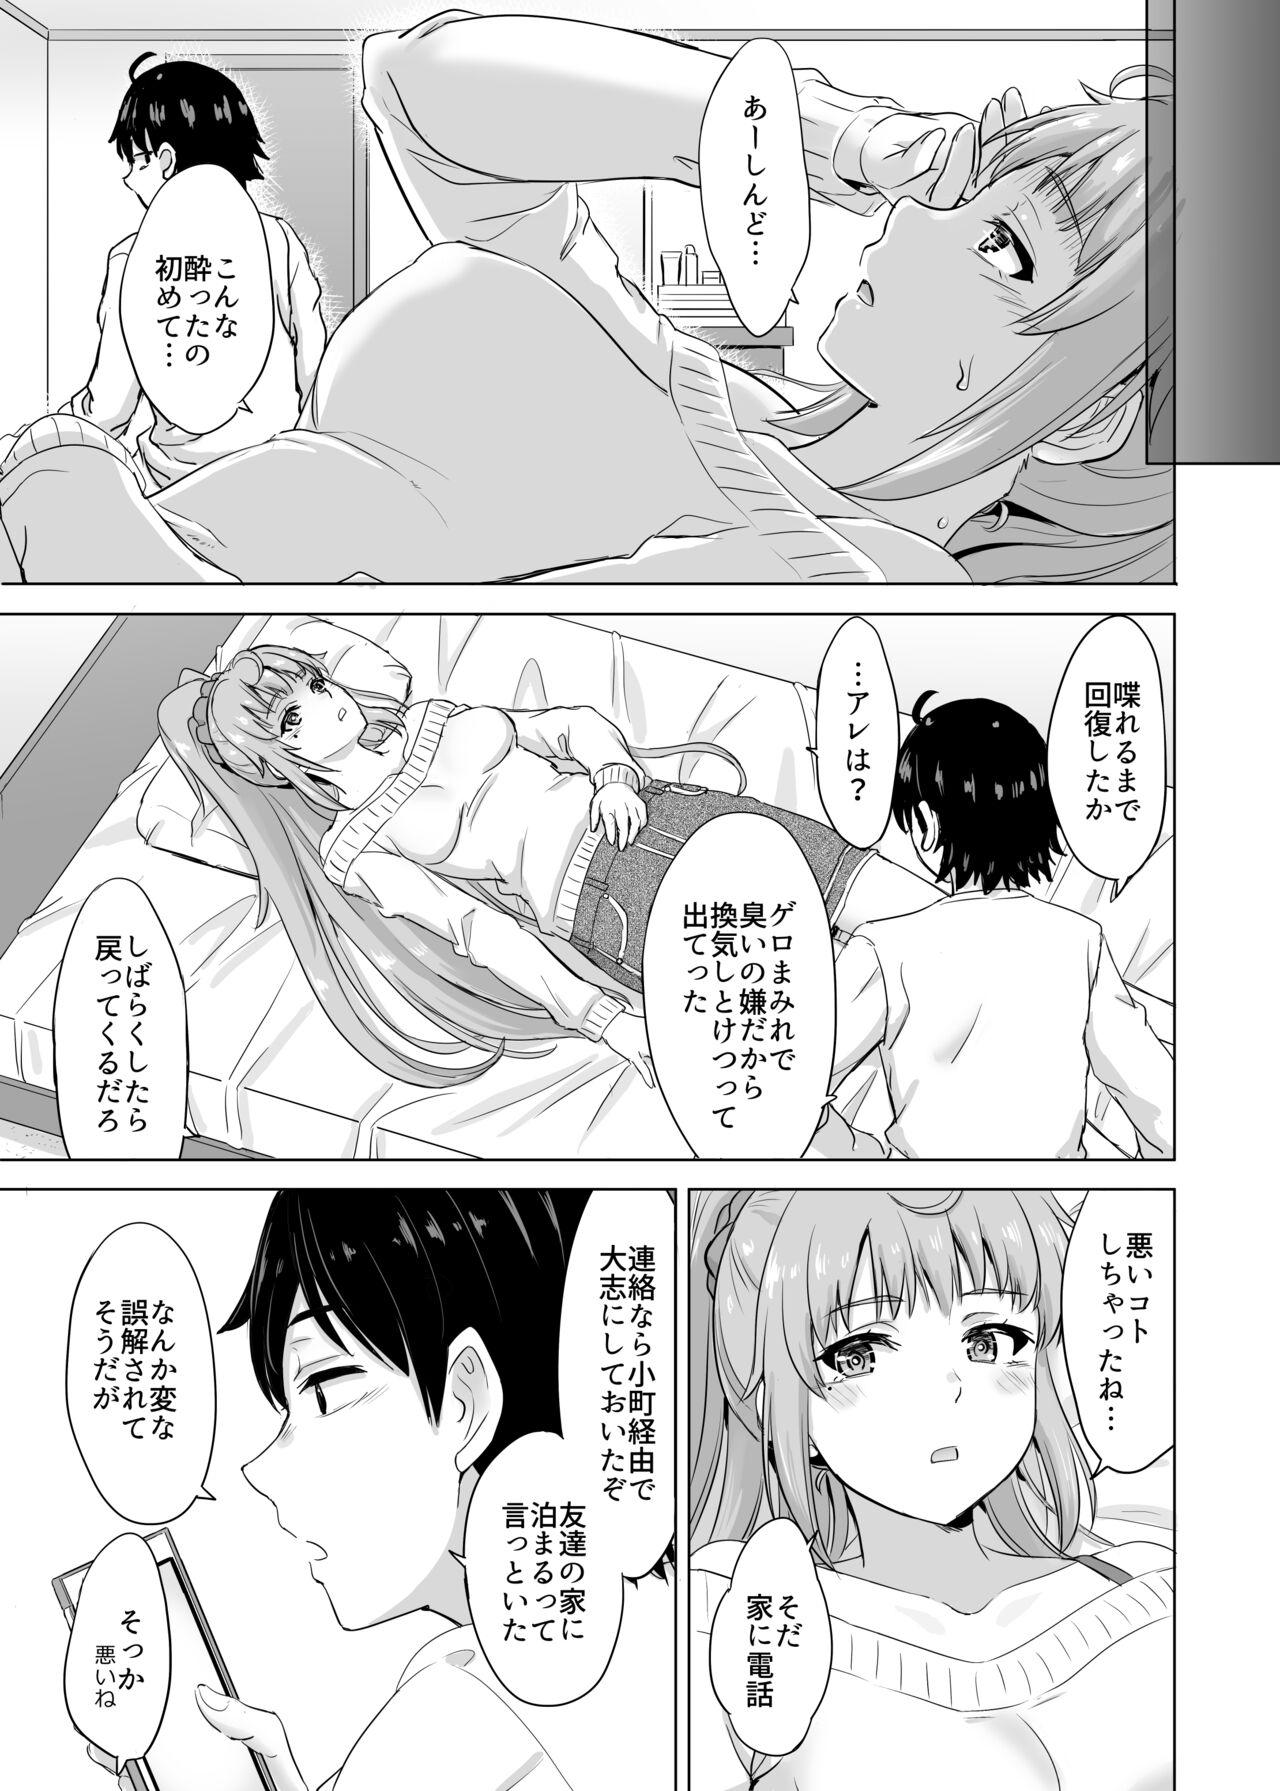 Madura あーしさんサキサキ漫画 - Yahari ore no seishun love come wa machigatteiru Free Blow Job Porn - Page 3